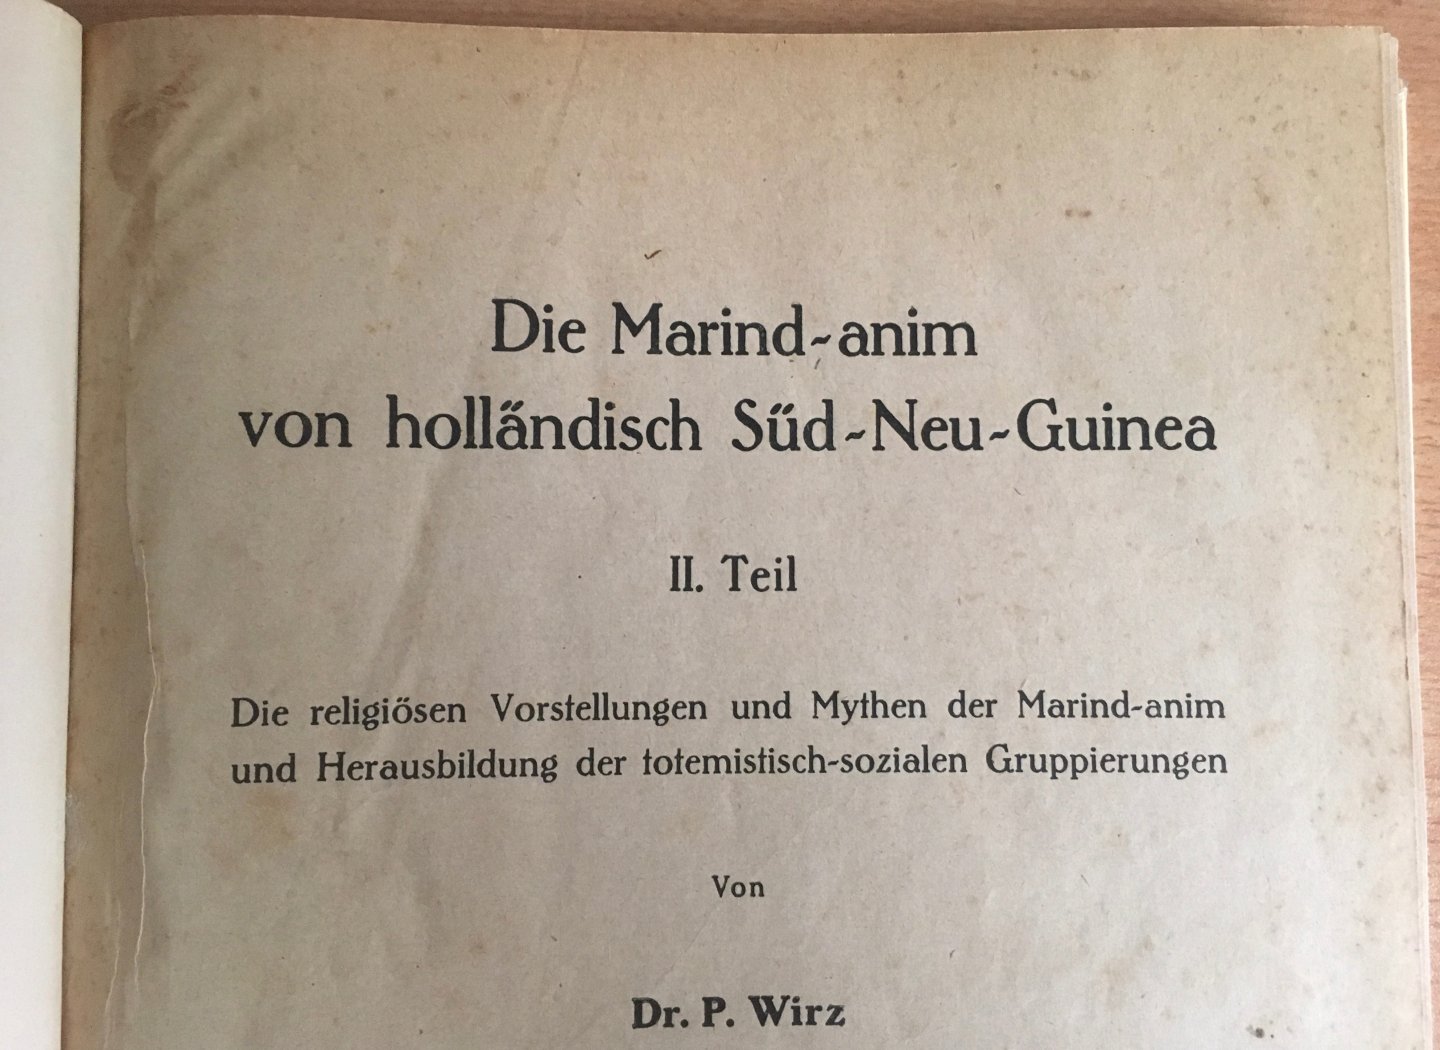 Wirz, P. - Die Marind-anim von hollandisch Süd-Neu-Guinea, II. Teil